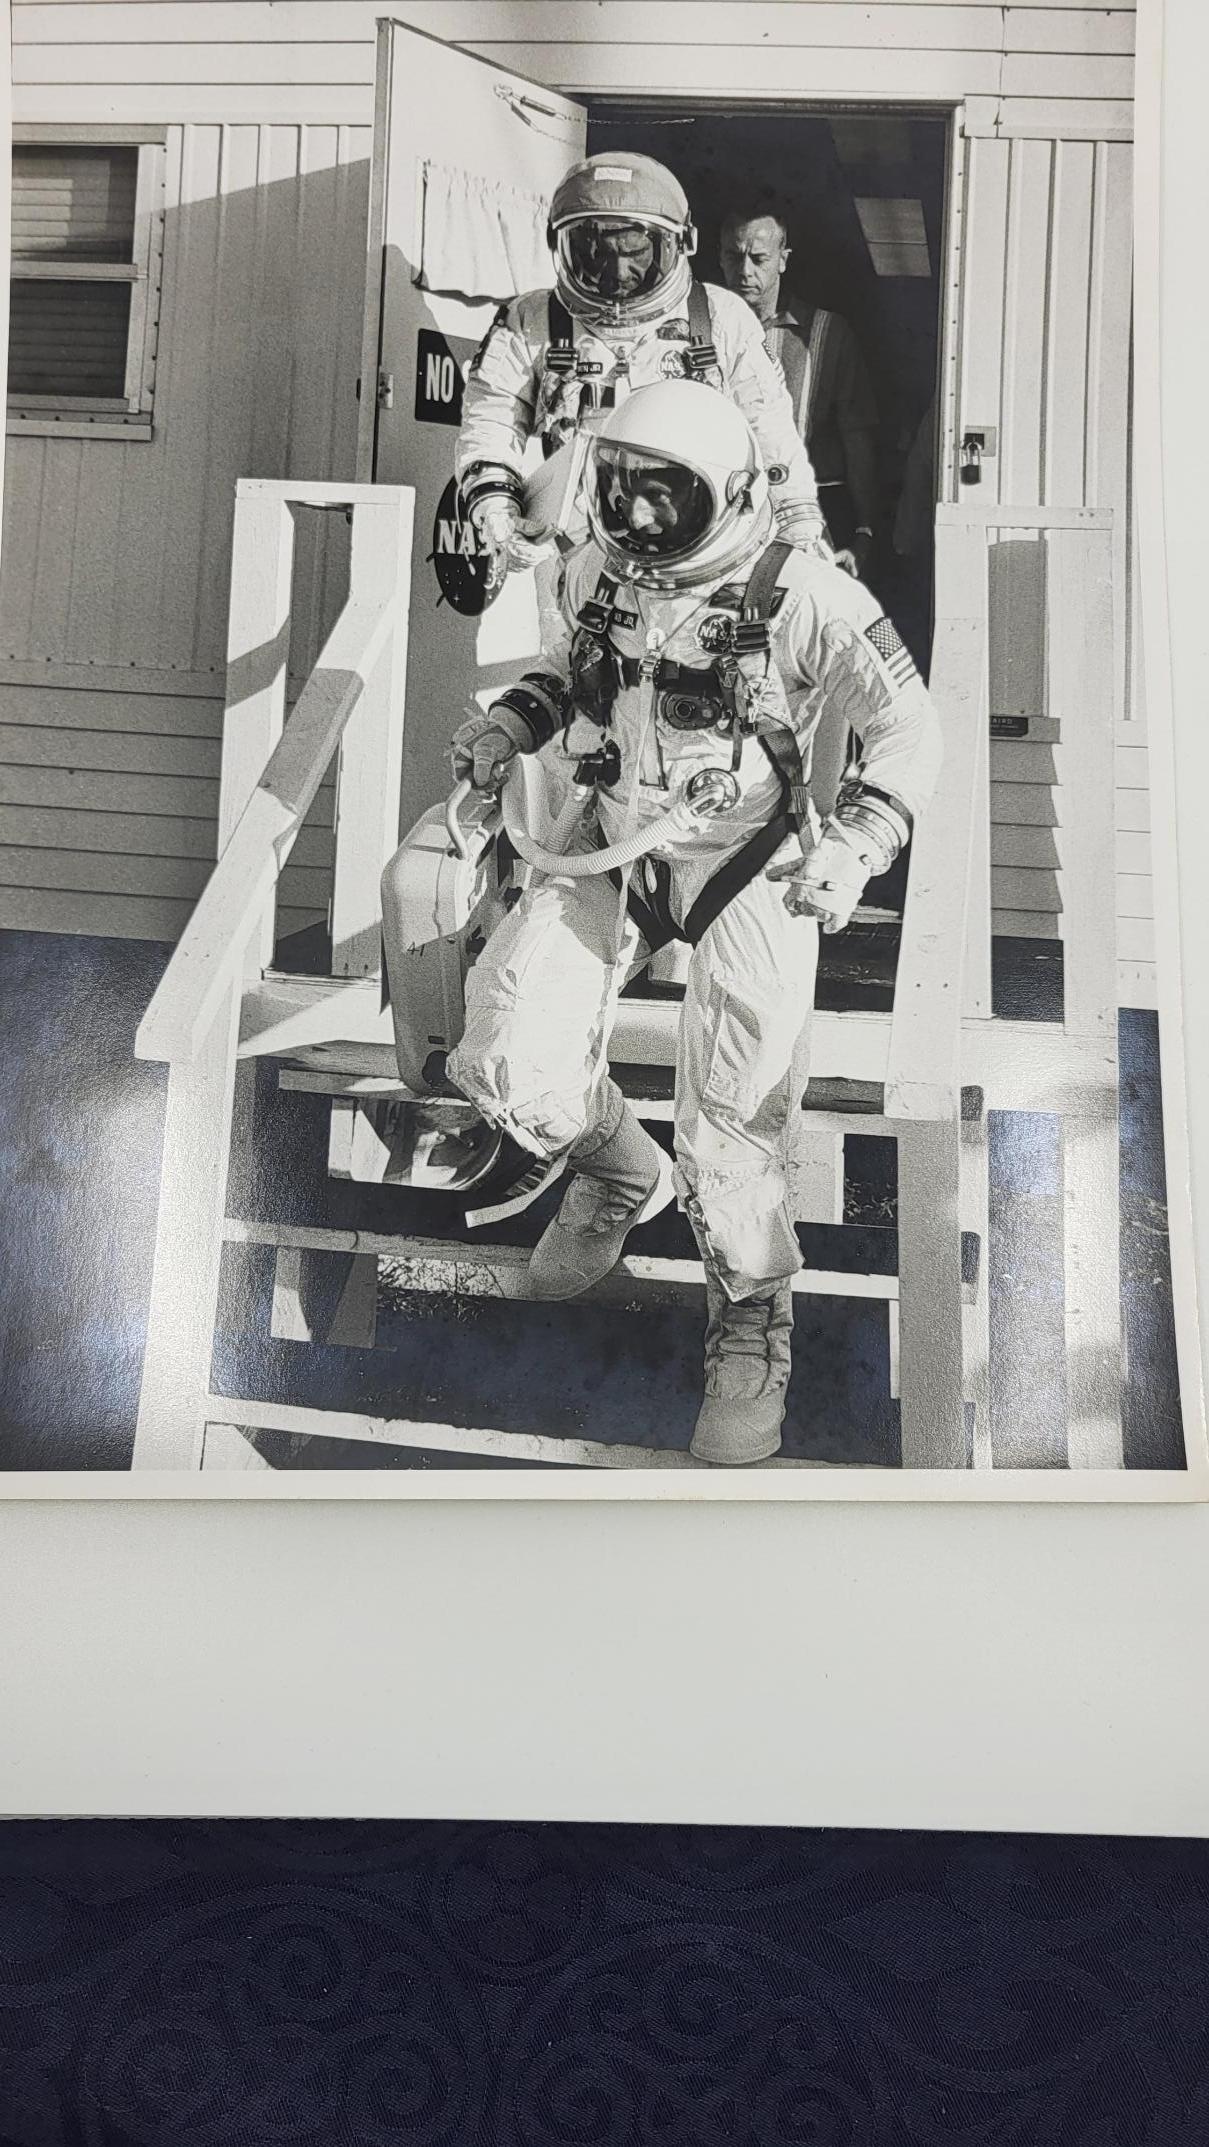 Gemini 11 Photo original tamponnée au dos World Book Encyclopedia Science Service,inc 516 Travis Street Houston Texas

Gemini 11 (officiellement Gemini XI) est la 9e mission habitée du programme Gemini et la 15e mission spatiale habitée américaine.